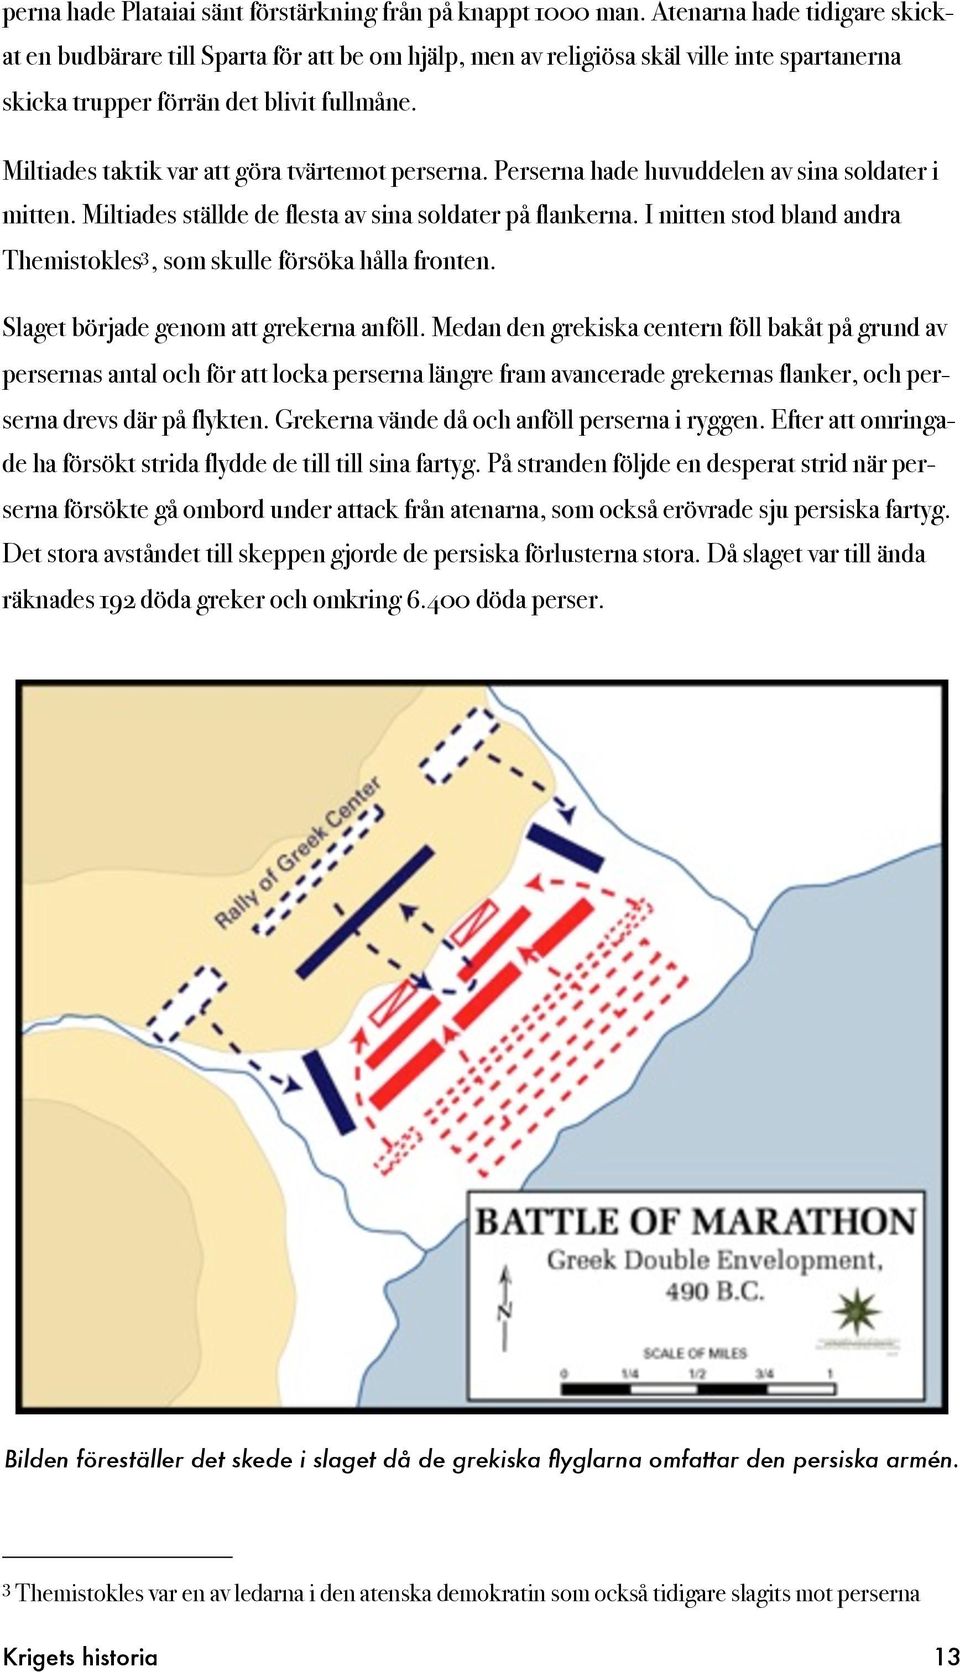 Miltiades taktik var att göra tvärtemot perserna. Perserna hade huvuddelen av sina soldater i mitten. Miltiades ställde de flesta av sina soldater på flankerna.